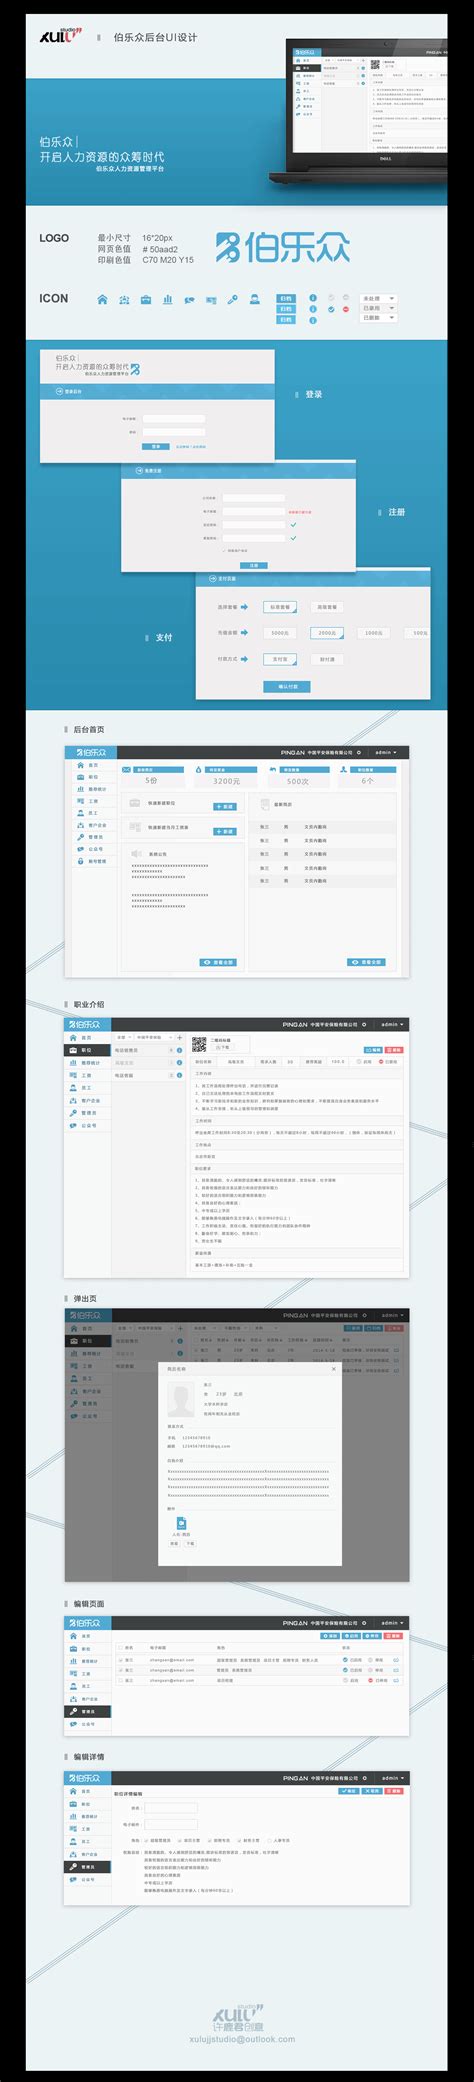 网站后台管理-后台系统_Uimaker-专注于UI设计